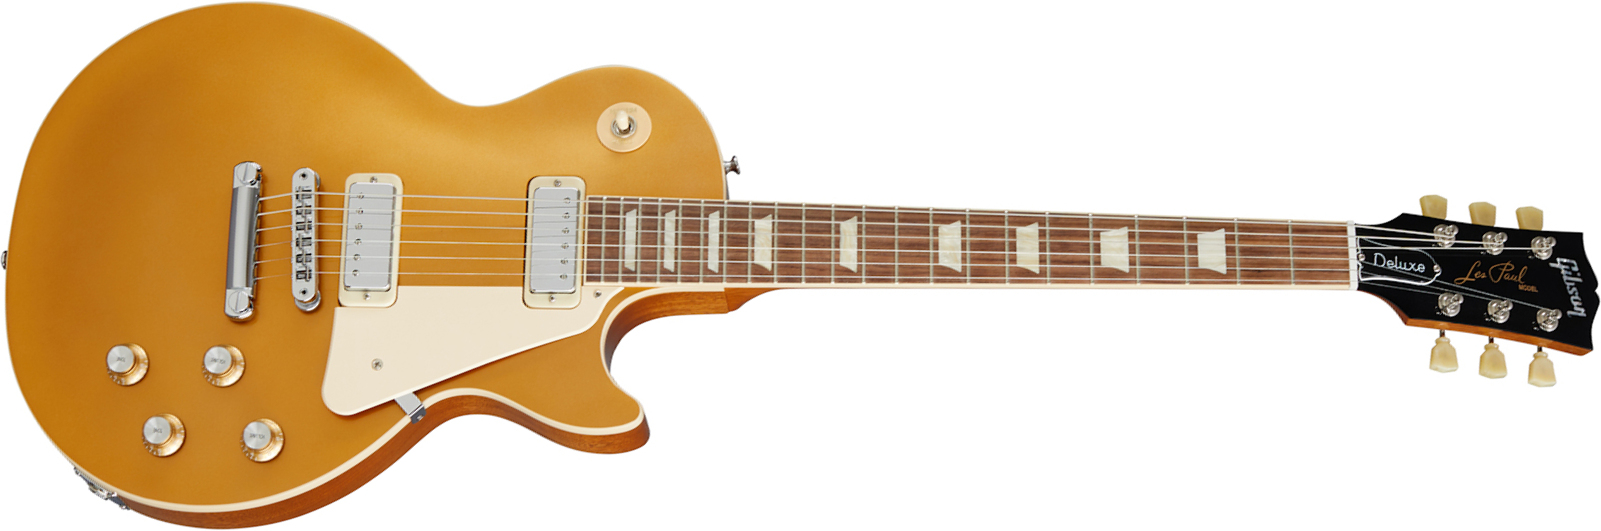 Gibson Les Paul Deluxe 70s Original 2mh Ht Rw - Gold Top - Enkel gesneden elektrische gitaar - Main picture